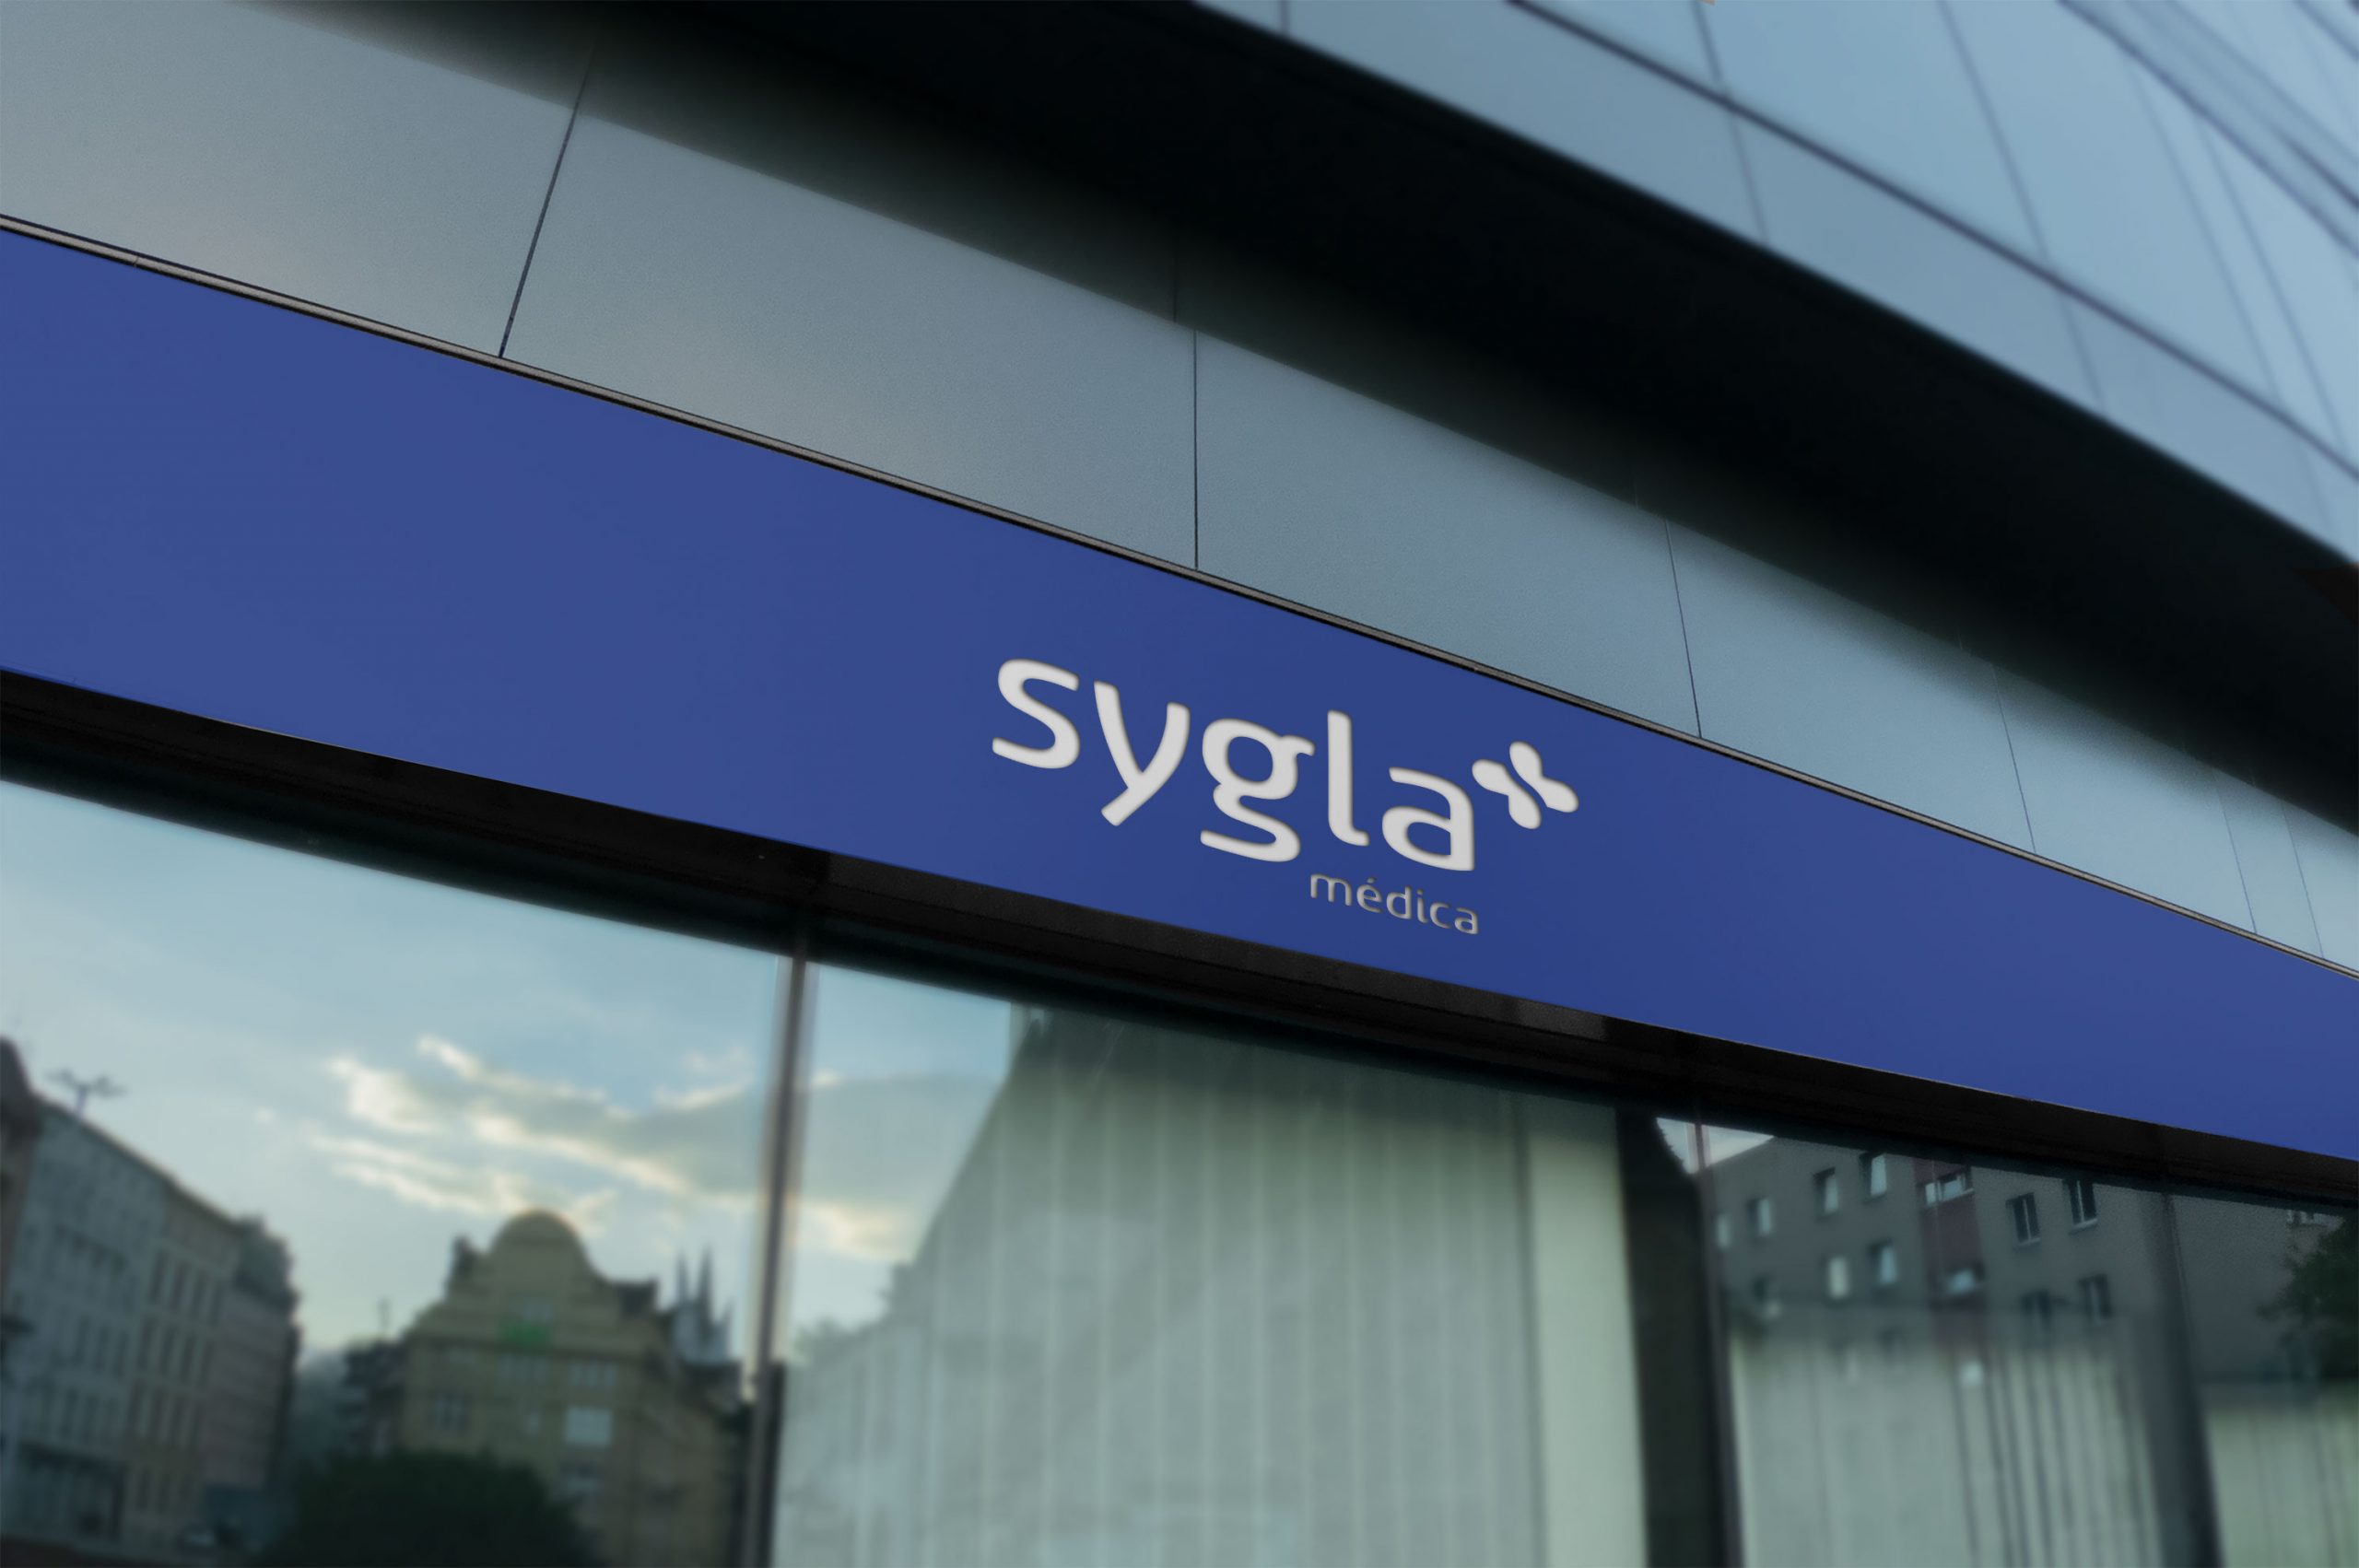 sygla-press7-logo-fachada